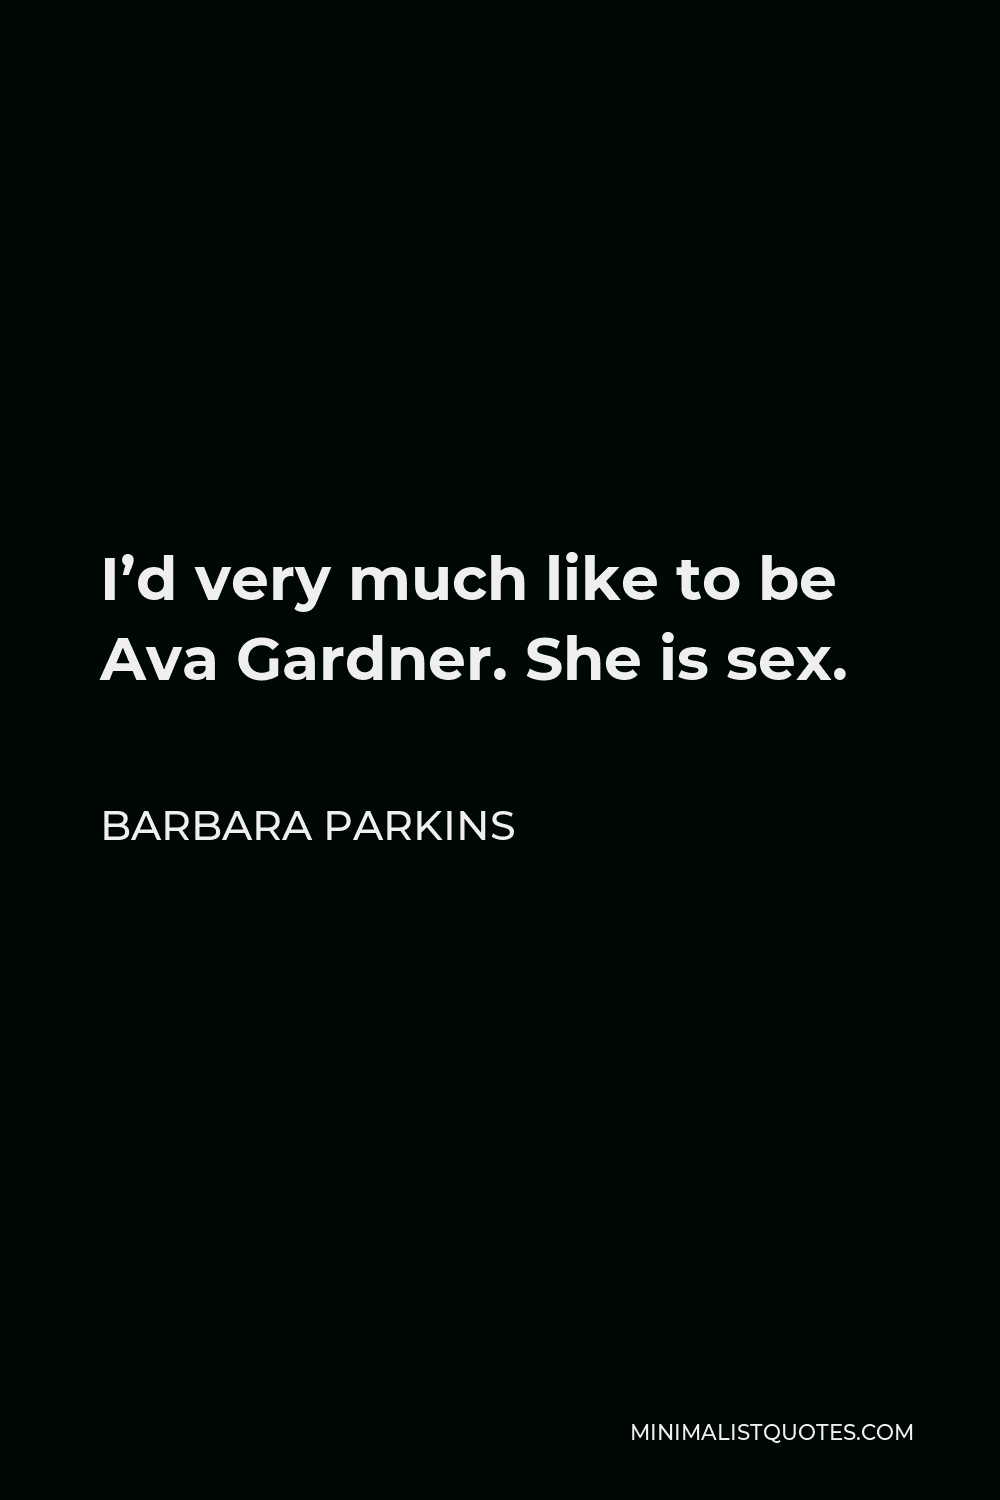 Barbara Parkins Quotes Minimalist Quotes 1283